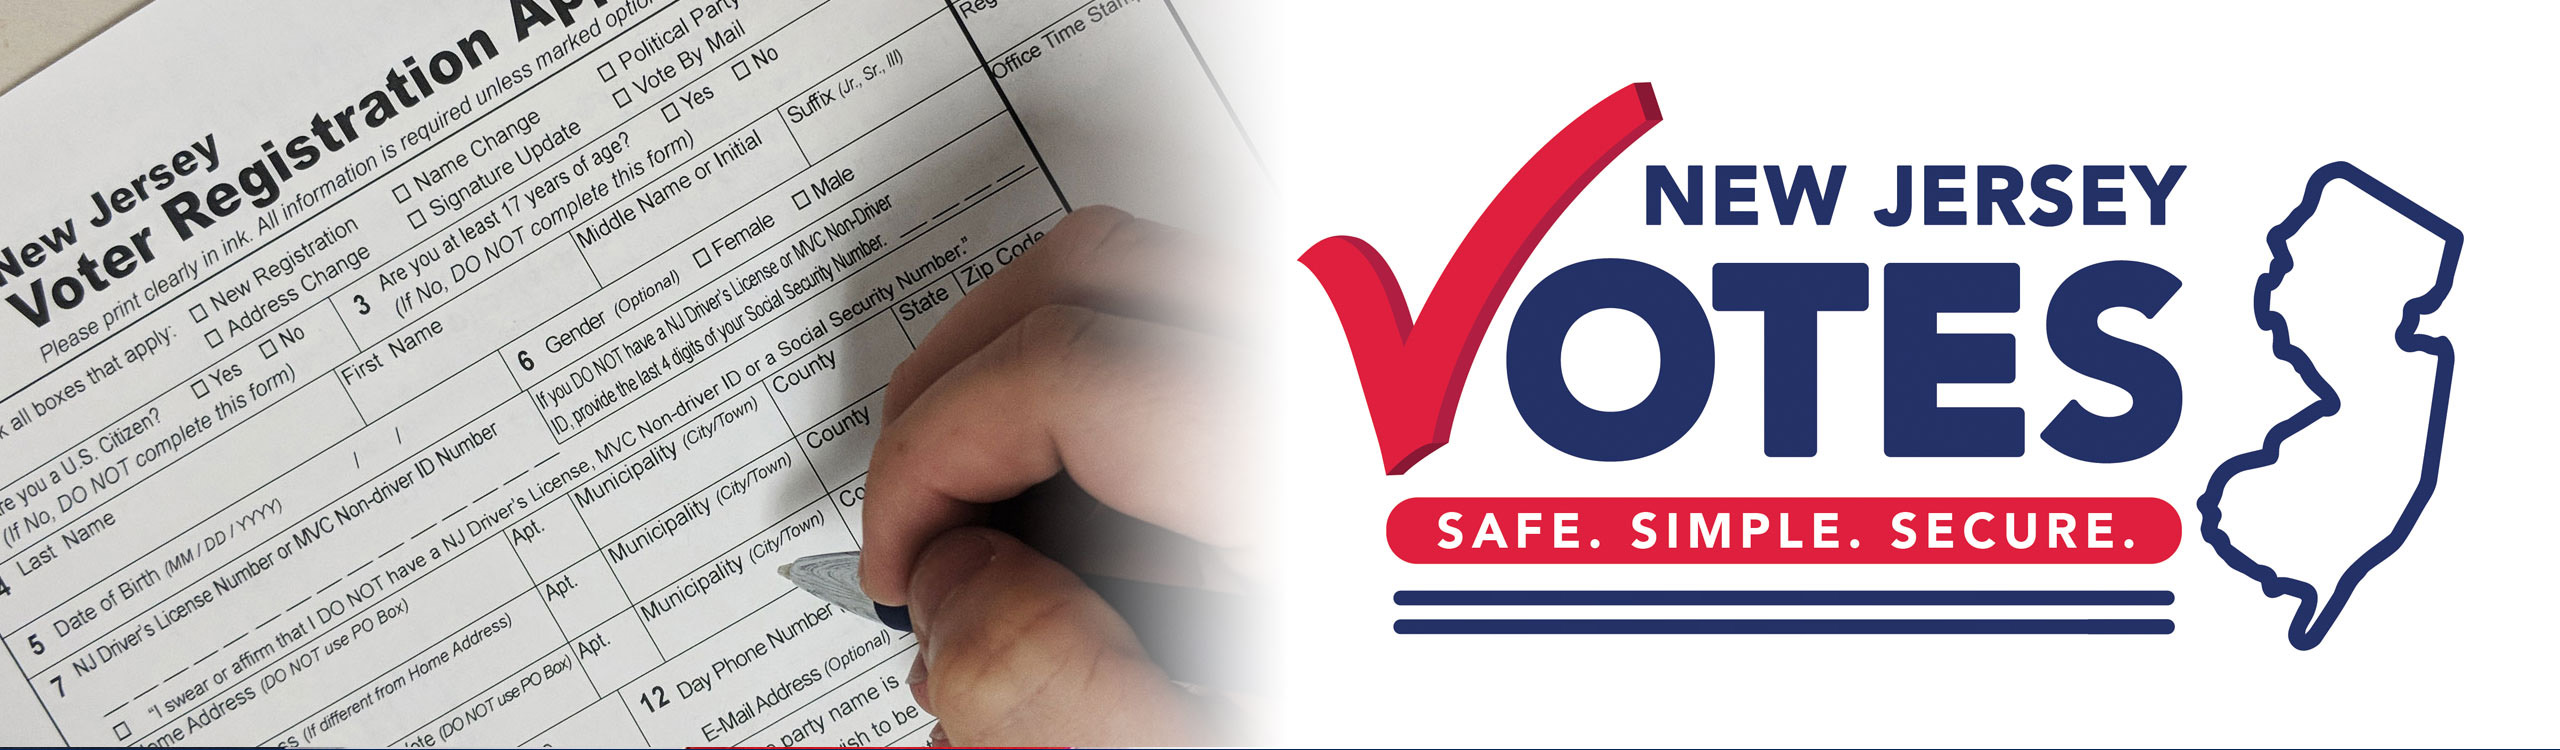 Register Vote - Image of Hand filling out Registration Form and the NJ Votes Logo